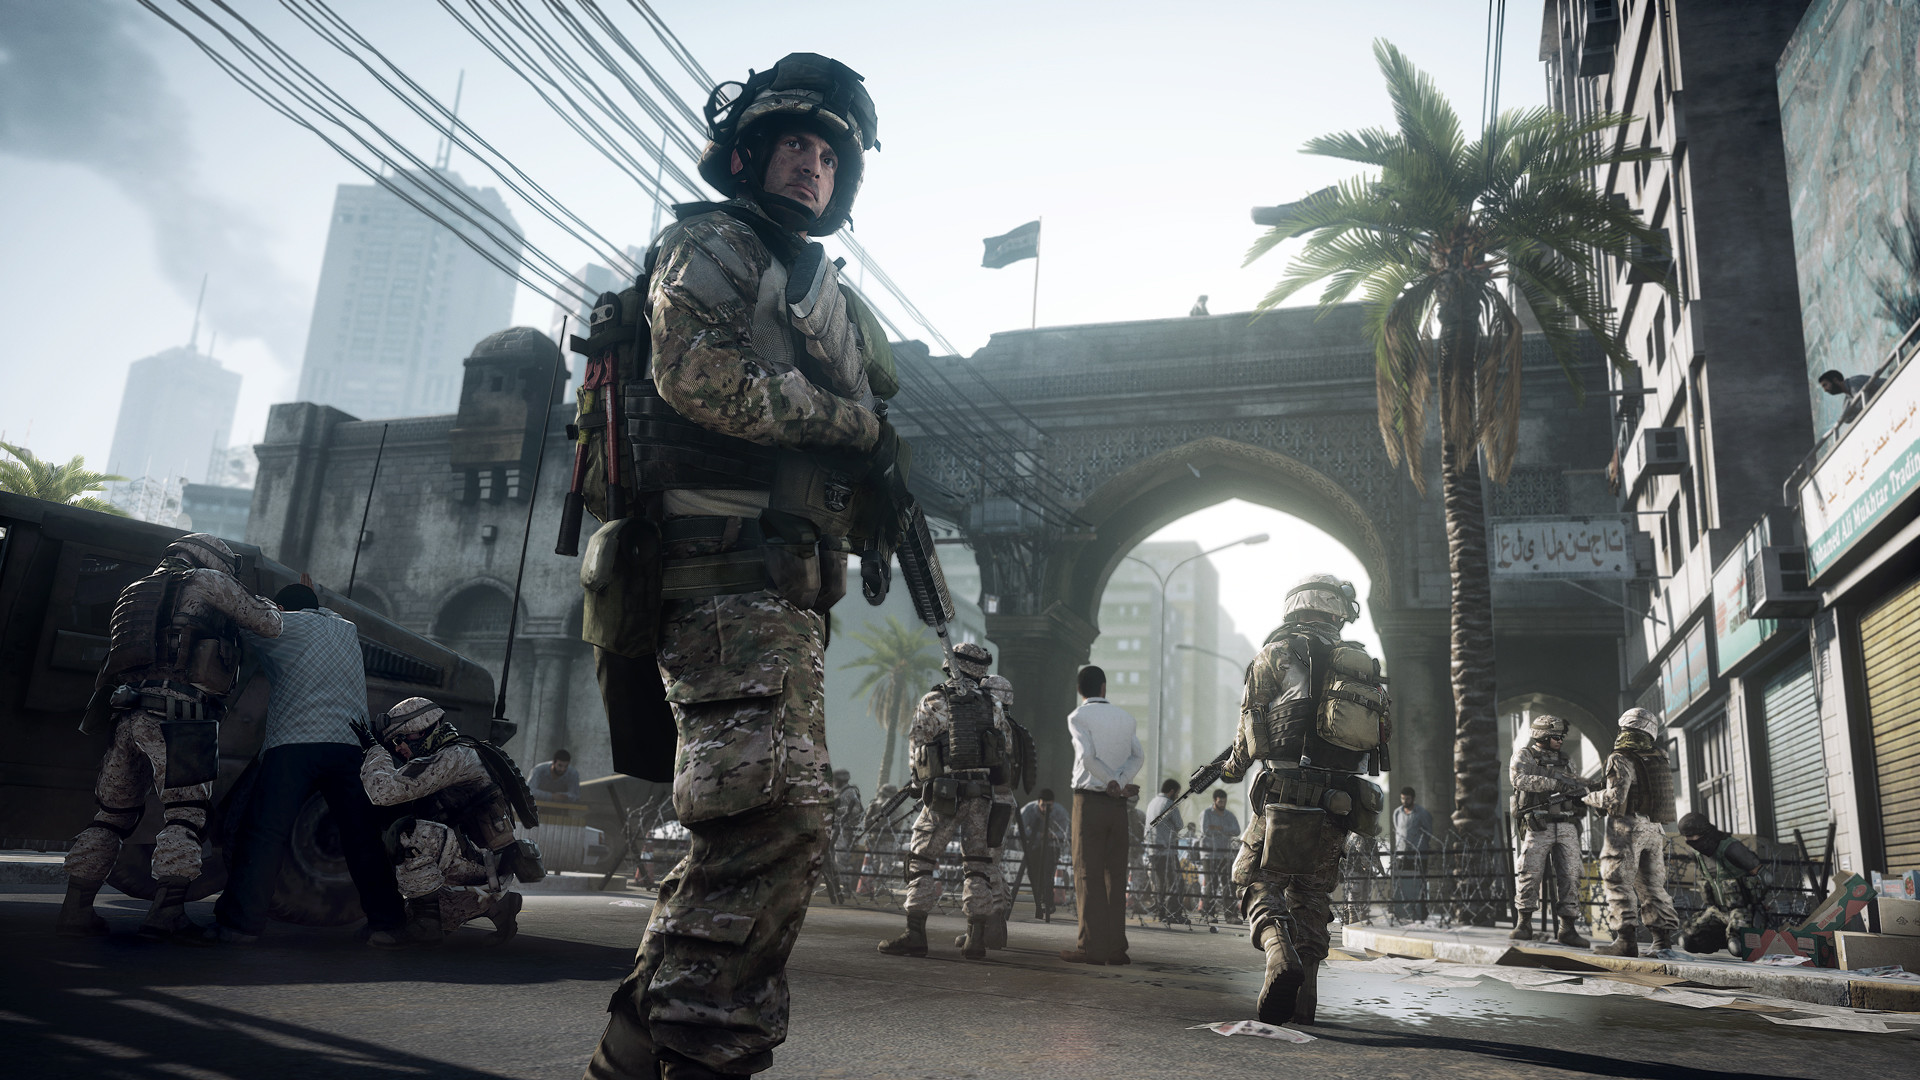 17 lipca pojawia się realistyczny mod do Battlefield 3 – rozwijany przez siedem lat